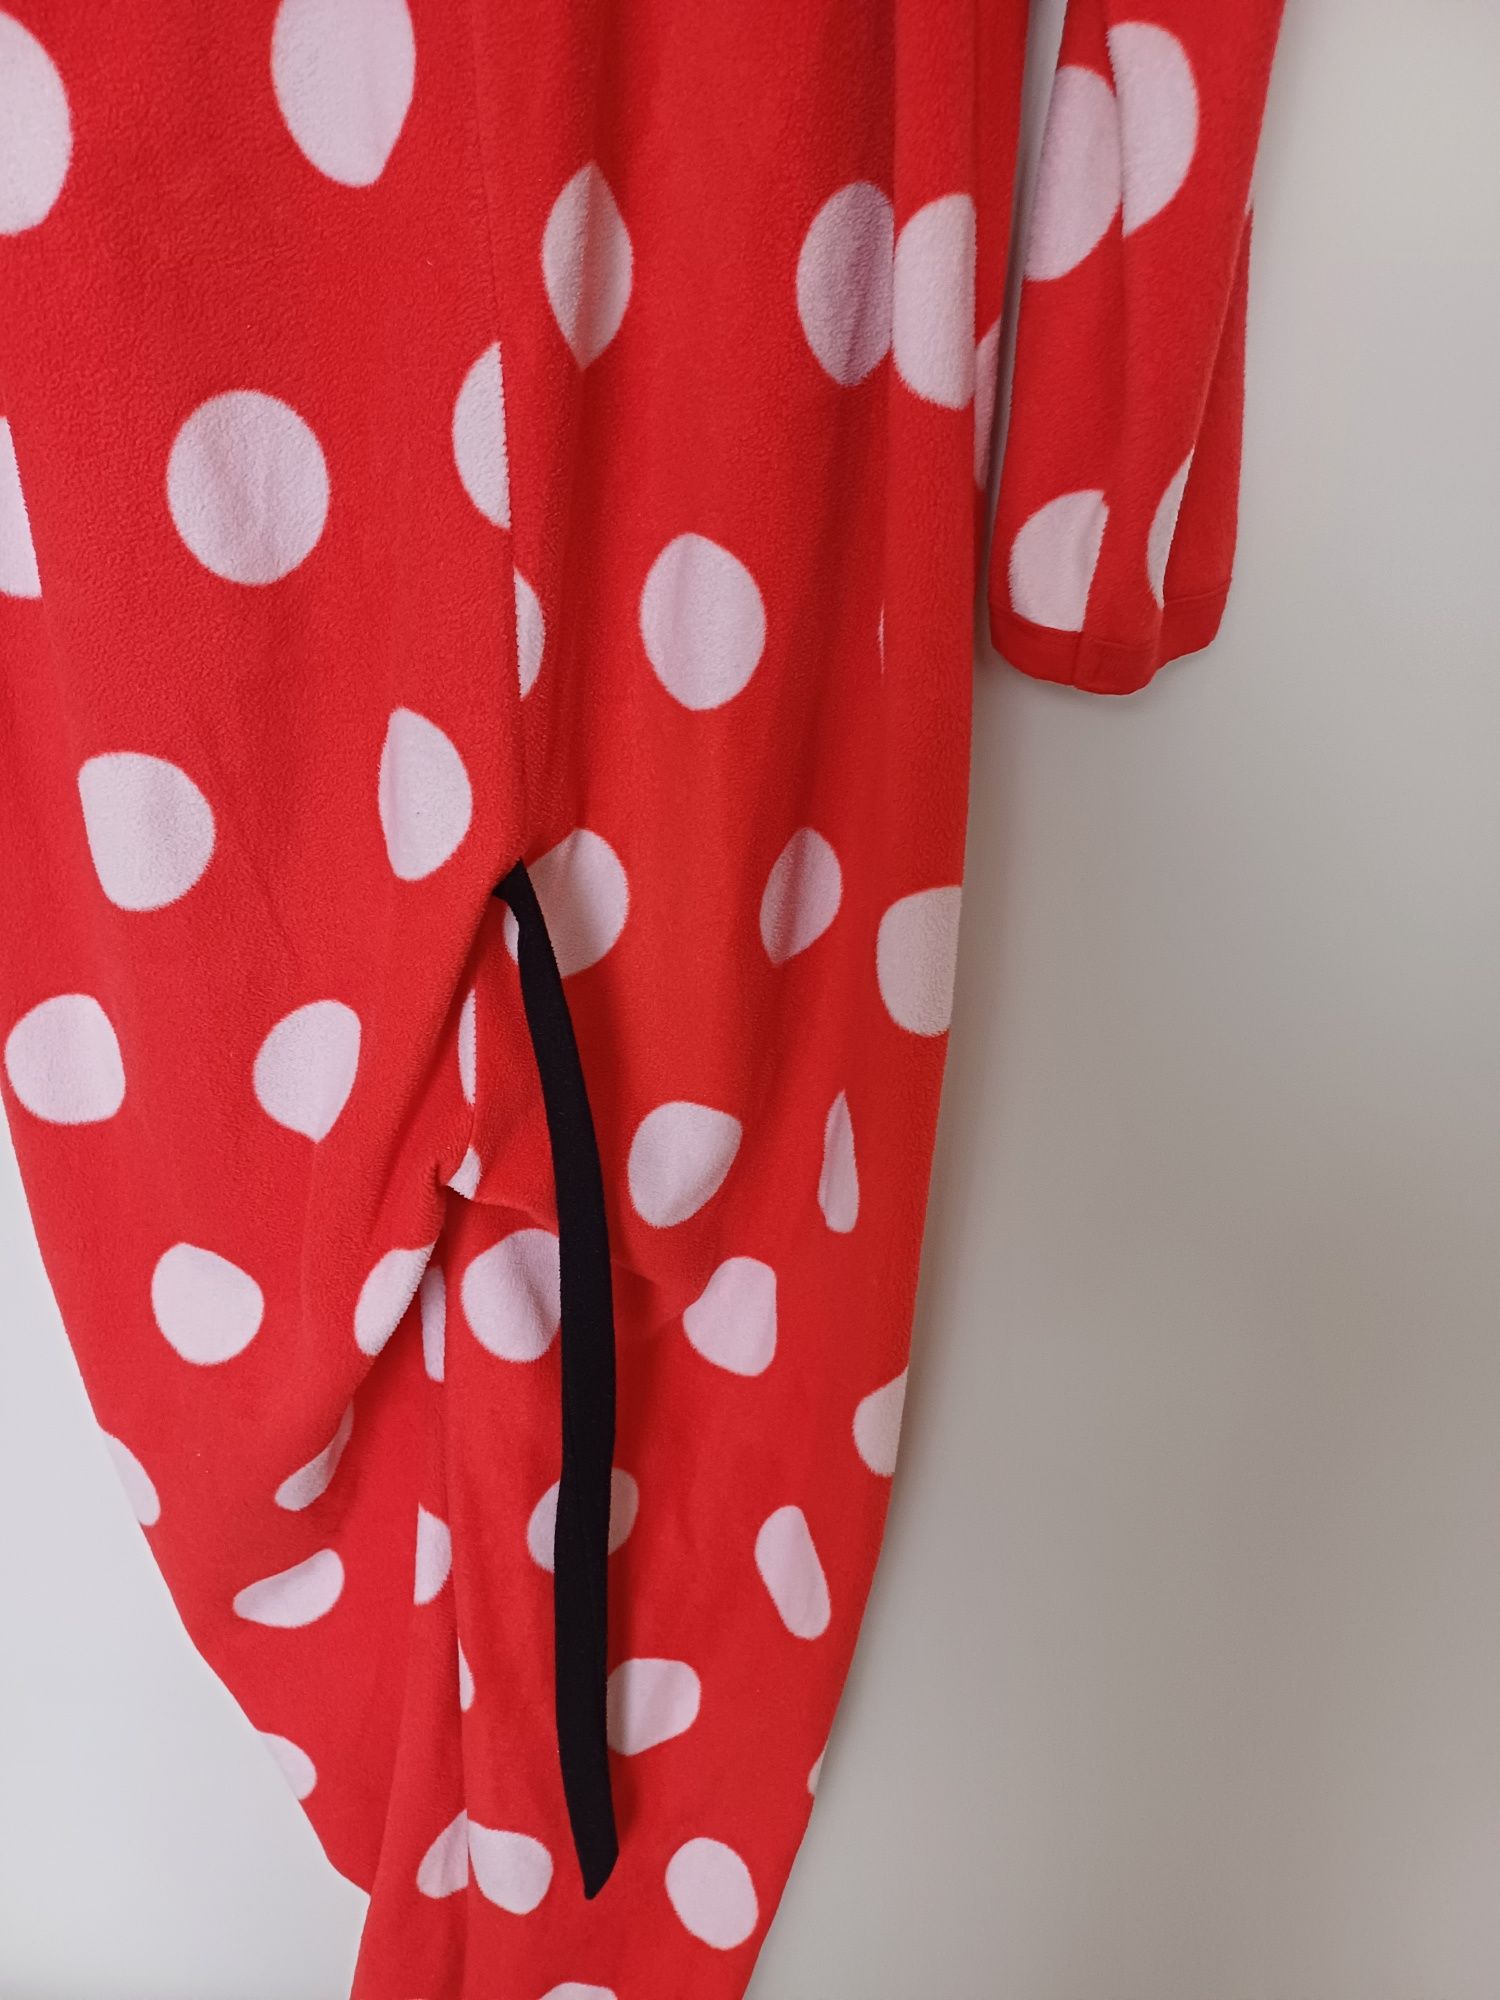 Piżama, pajacyk Myszka Miki rozmiar S/36-38/firmy  Disney.